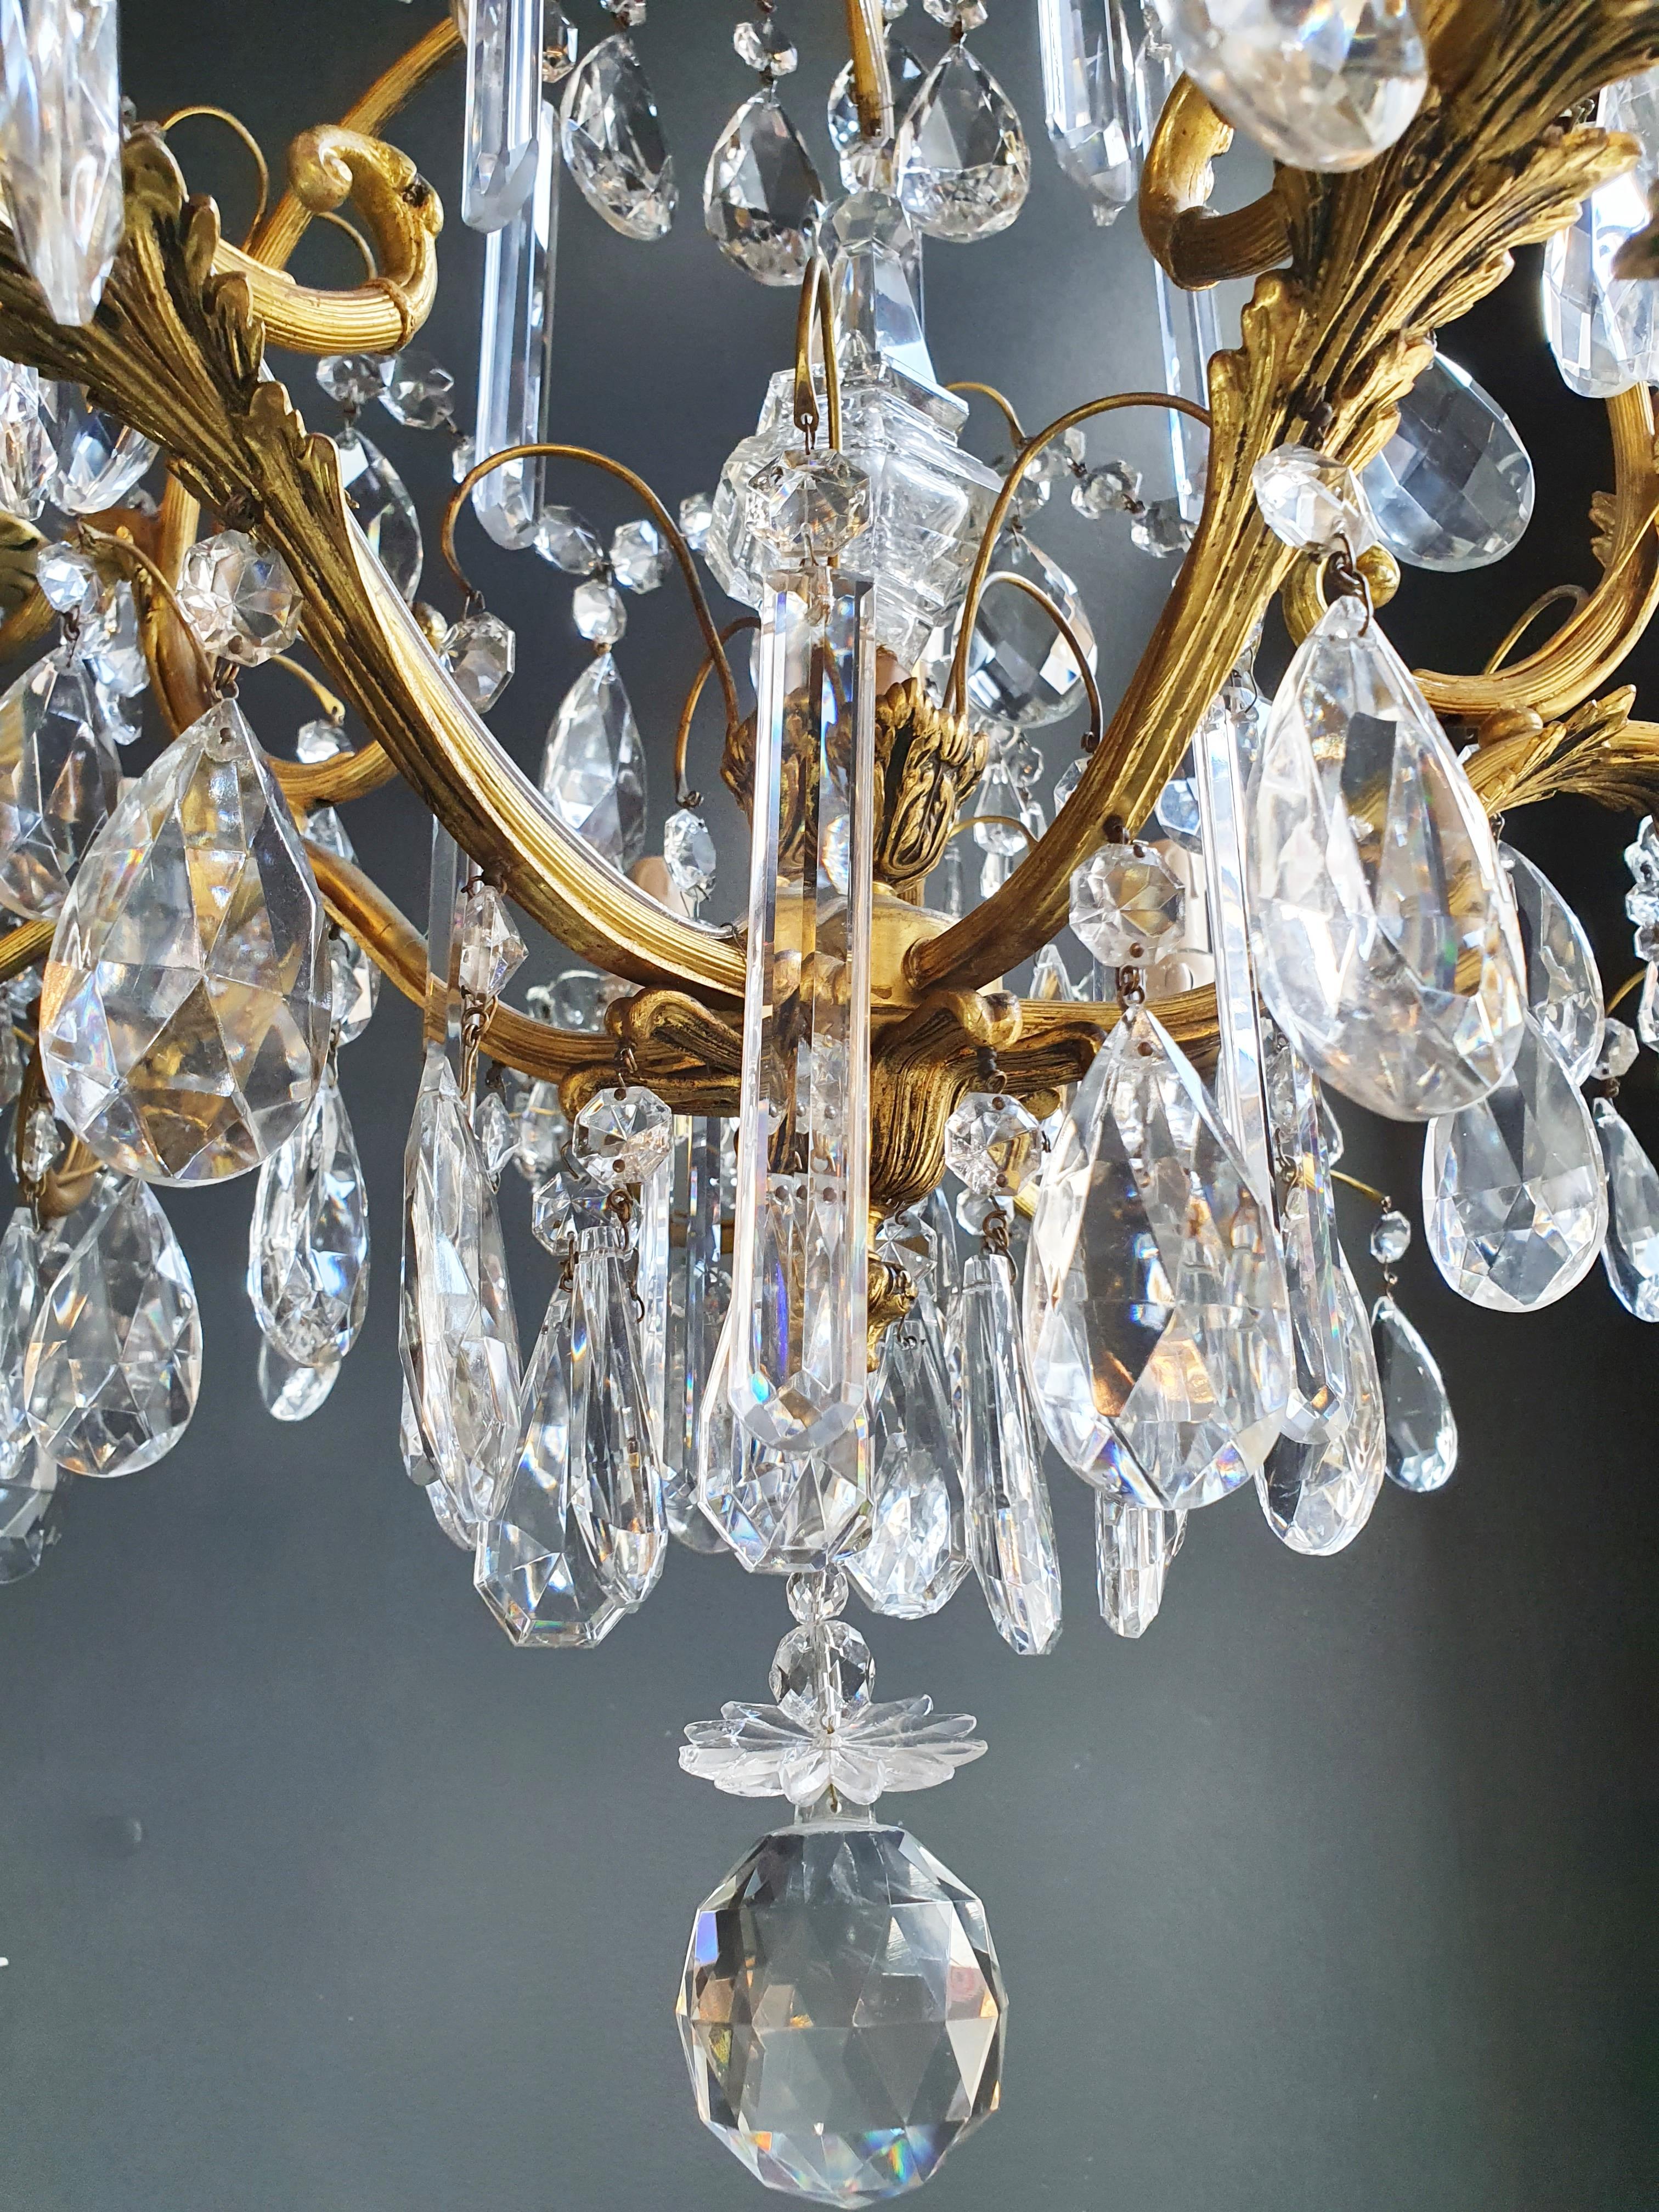 Brass Crystal Chandelier Antique Ceiling Lamp Lustre Art Nouveau Lamp For Sale 2